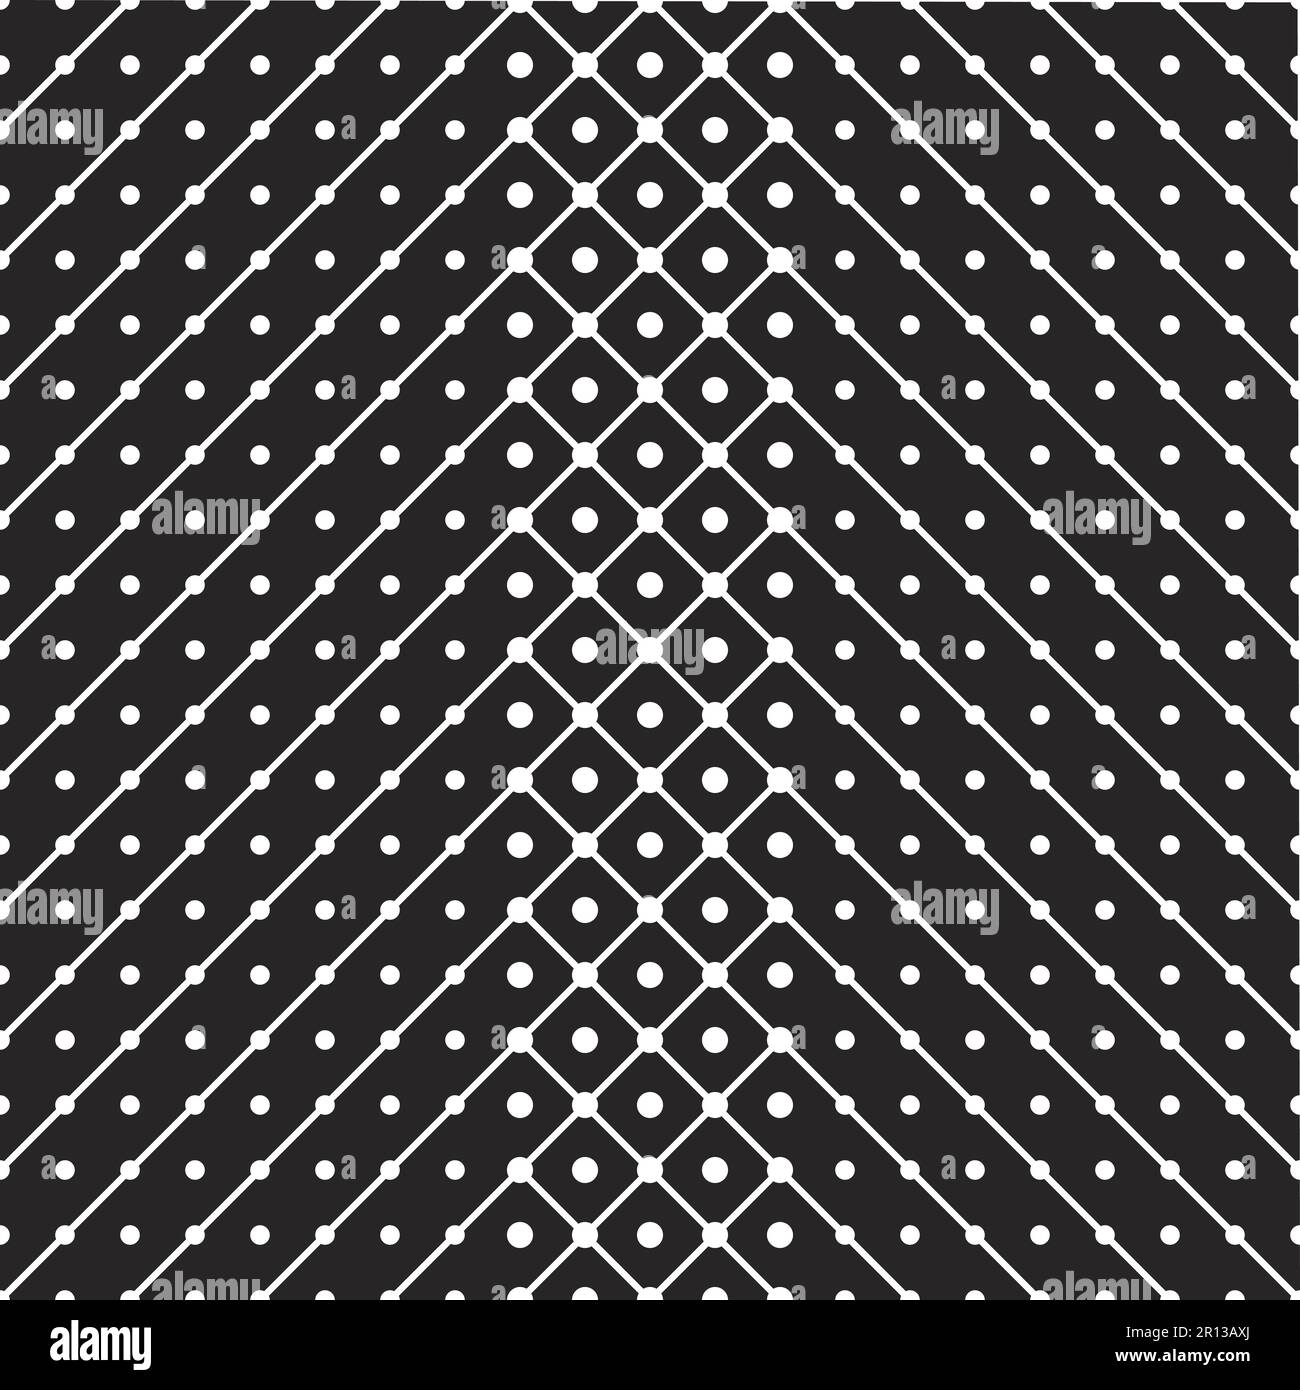 Schwarzer und weißer geometrischer Hintergrund. Schräge diagonale Linien mit Punkten werden gespiegelt und schneiden sich in der Mitte. Modernes, einfarbiges Muster. Bu Stock Vektor